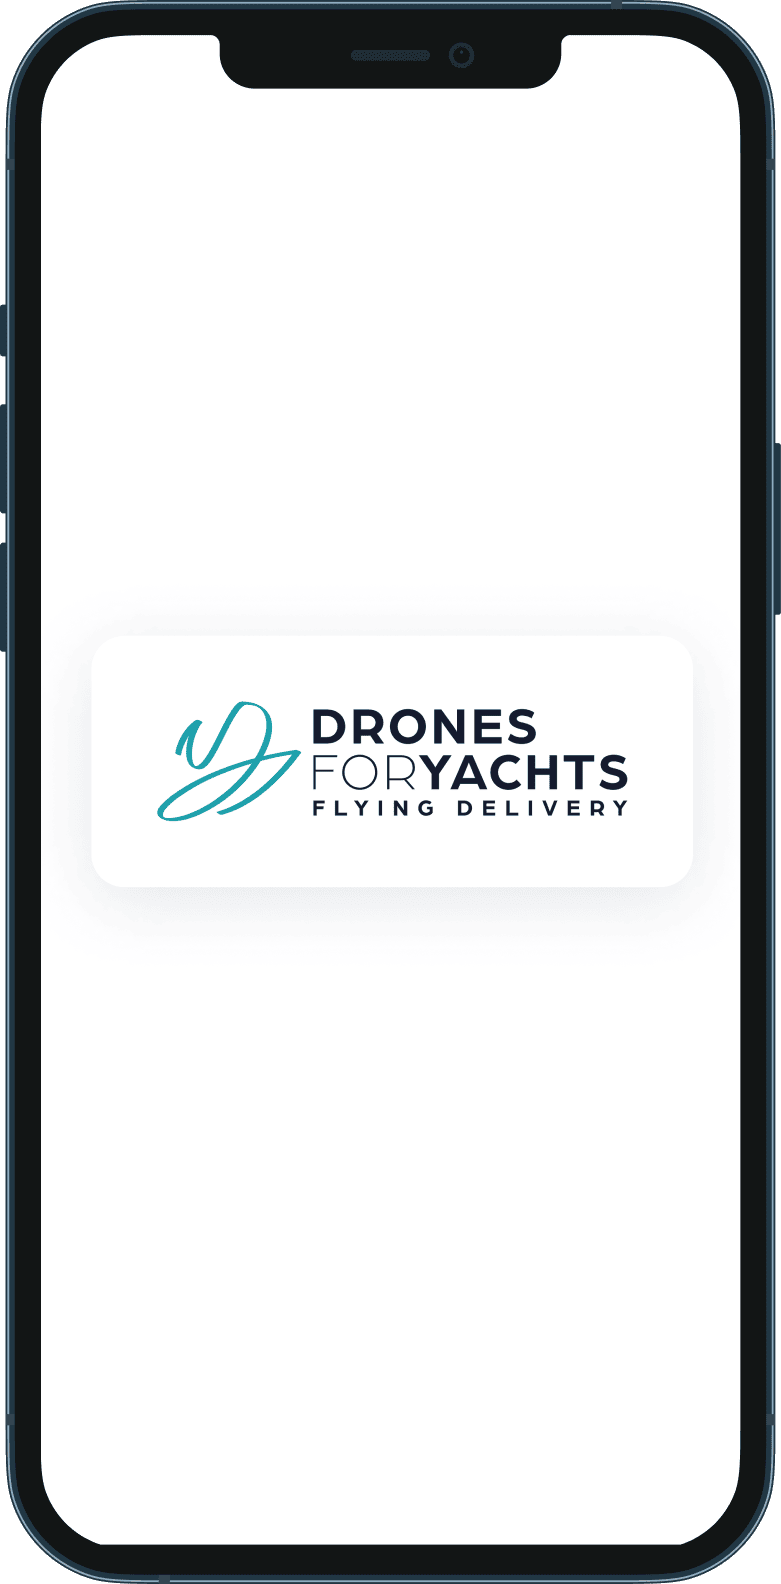 Applicazione mobile per il marketplace Drones for Yachts, che consegna pacchi agli yacht con i droni 
